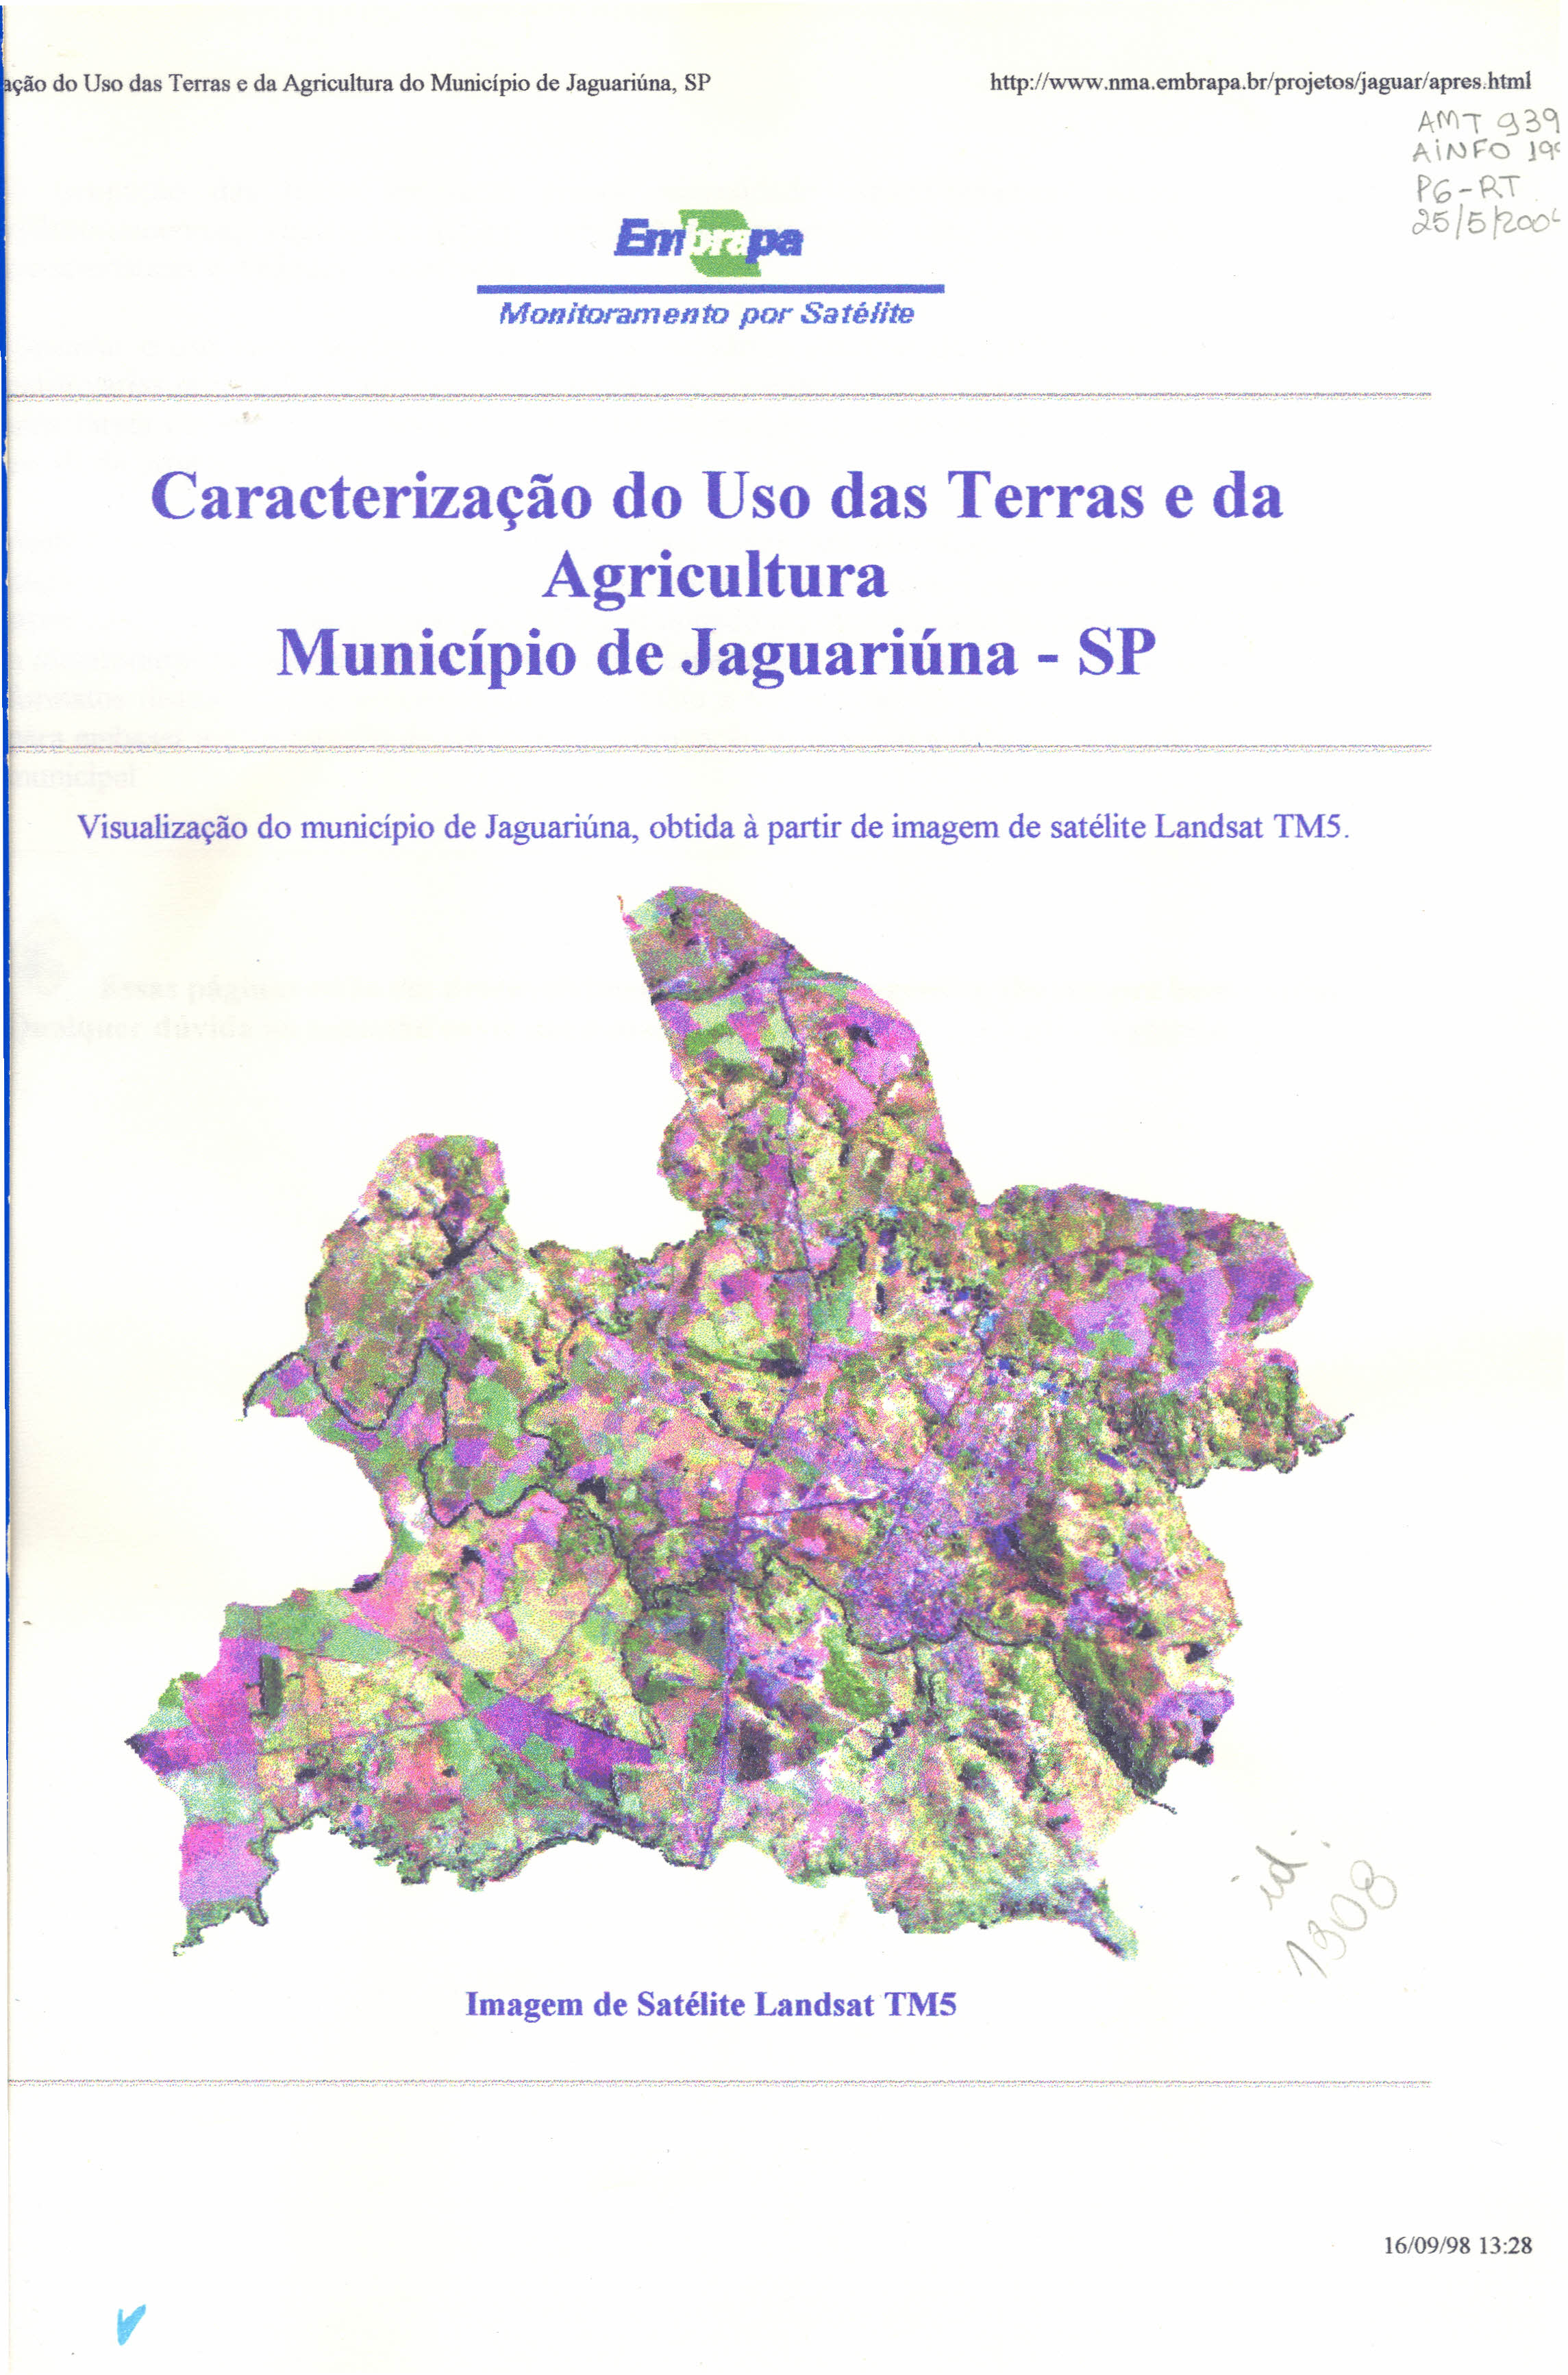 ção do Uso das Terras e da Agricultura do Município de Jaguariúna, SP http://www.nma.embrapa.br/projetos/jaguar/apres.html AM"\ 0?